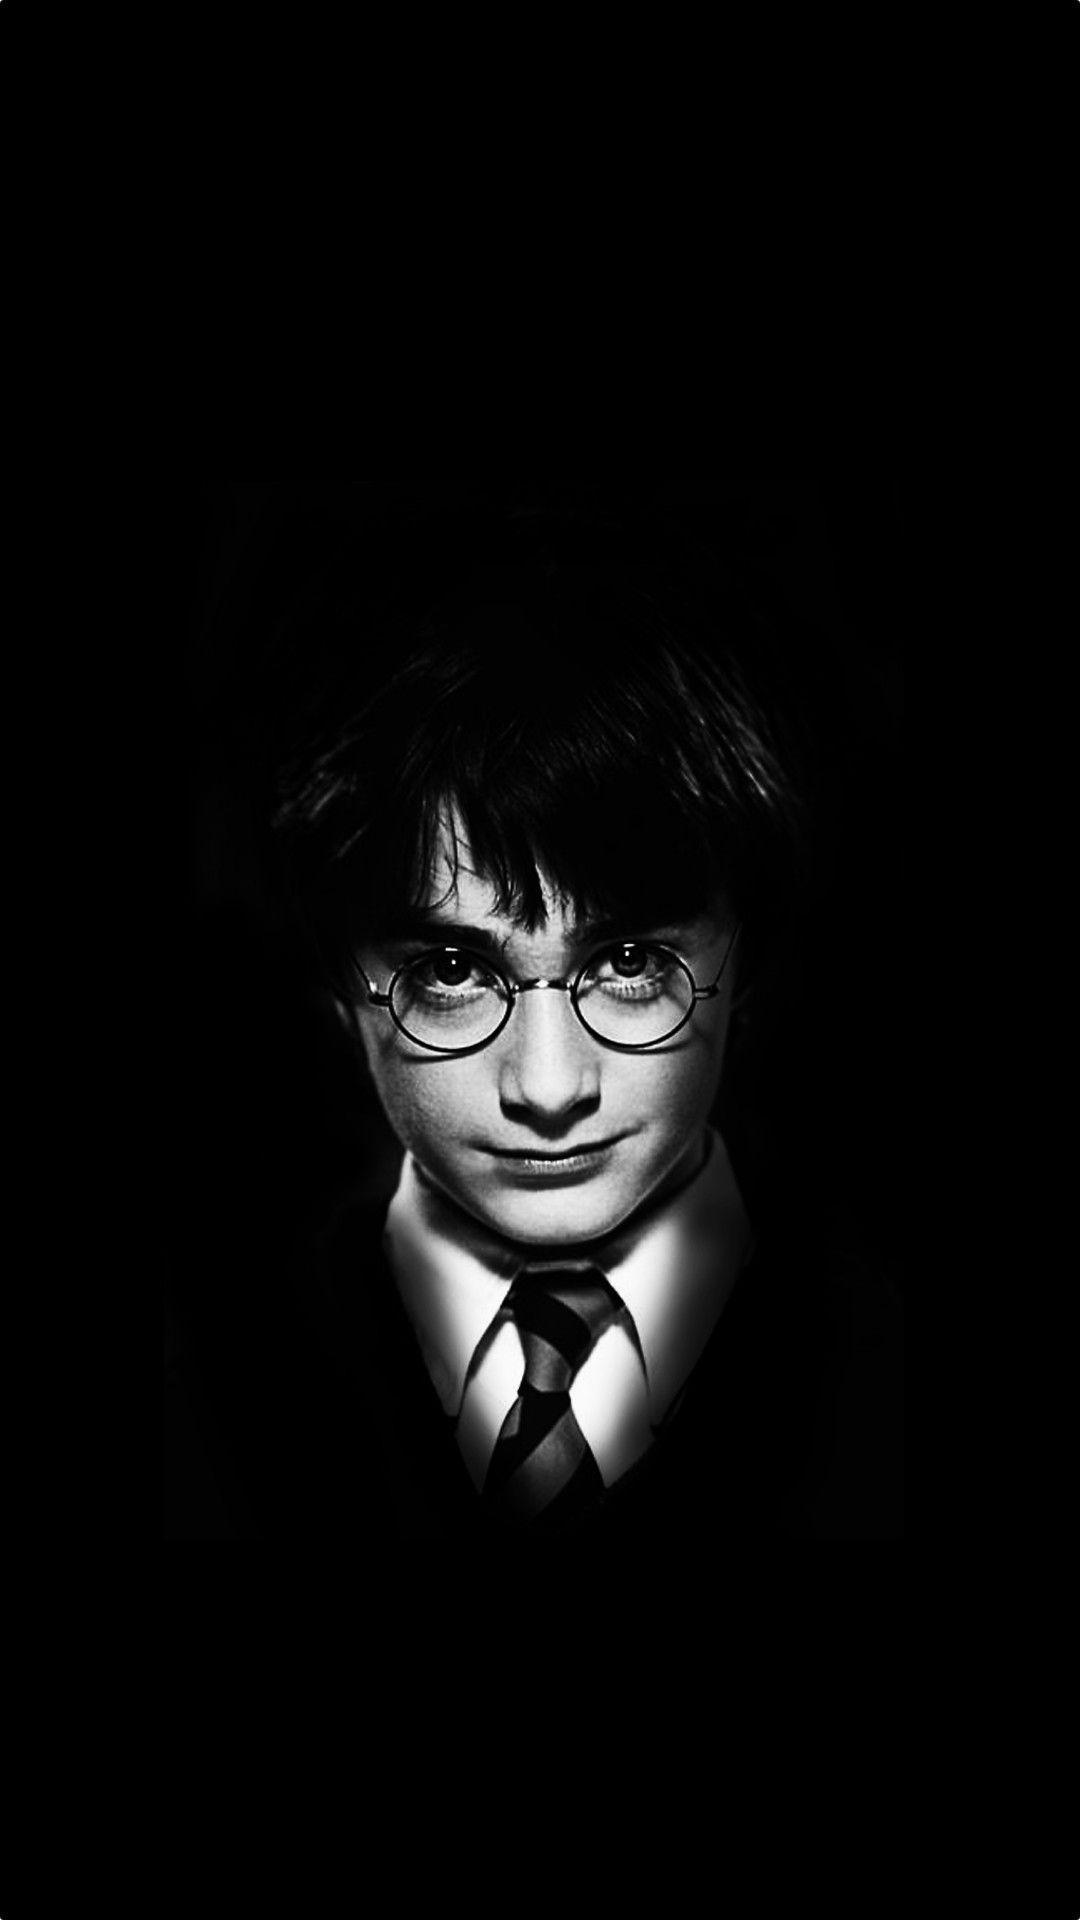 Dark Harry Potter Wallpapers - Top Free Dark Harry Potter Backgrounds